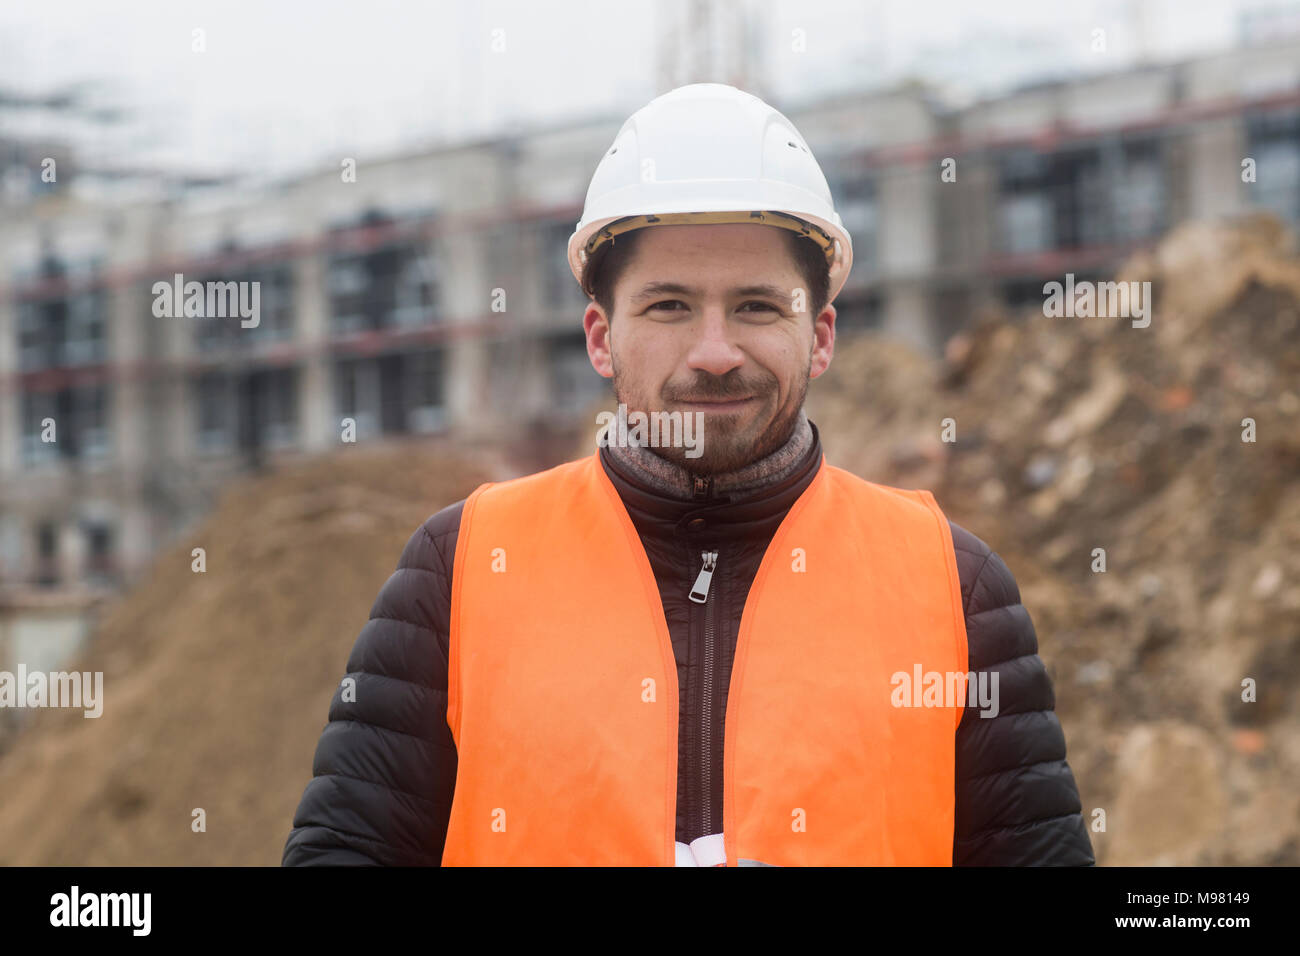 Ritratto di contenuto uomo che indossa giubbotto di sicurezza e casco al sito in costruzione Foto Stock